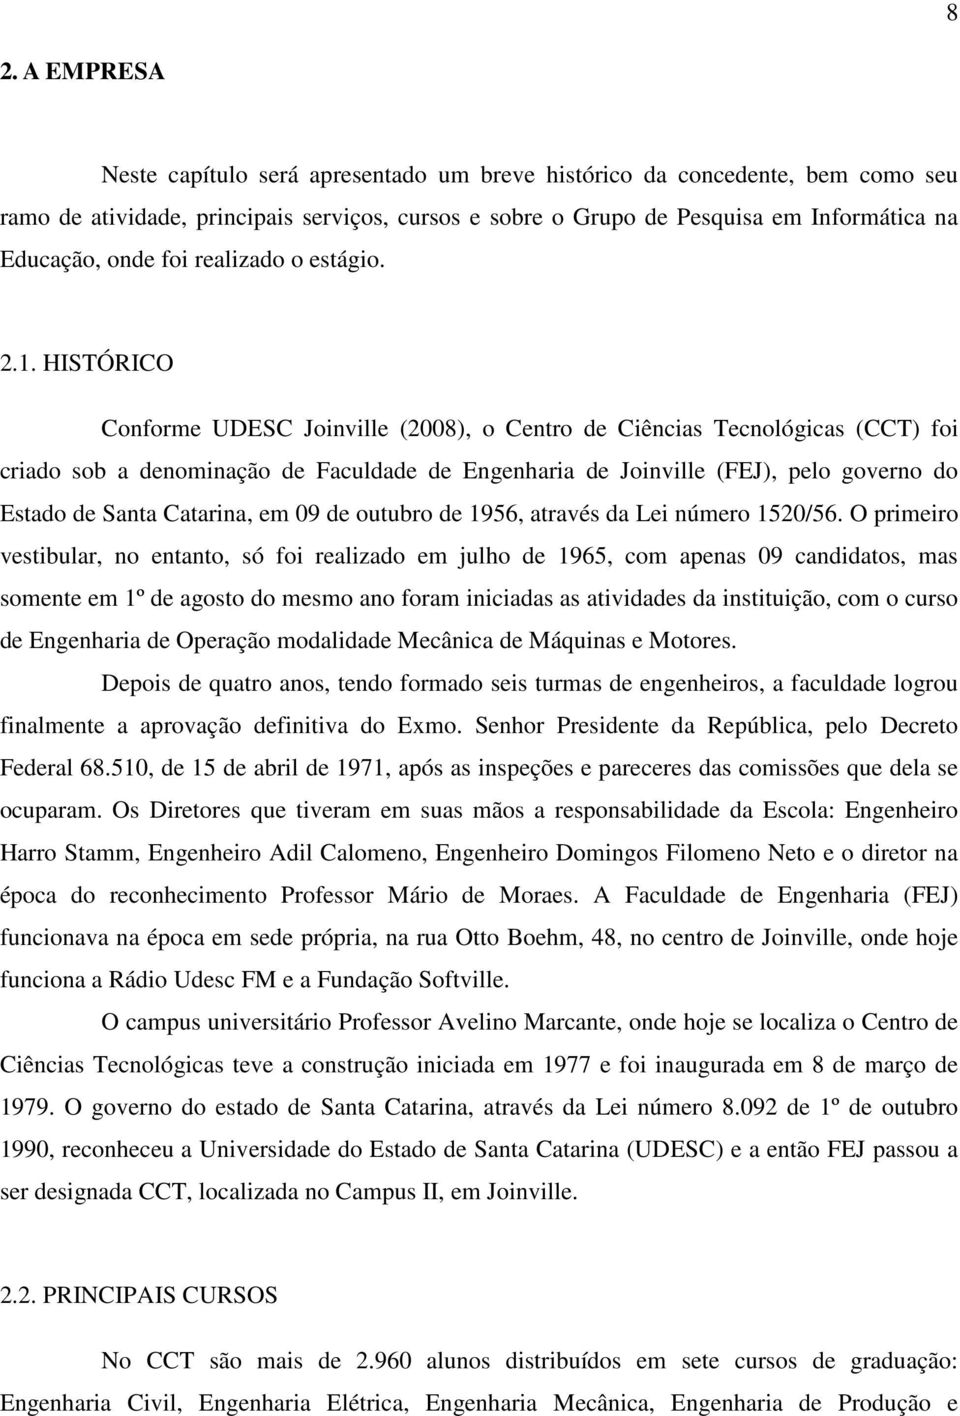 . HISTÓRICO Conforme UDESC Joinville (2008), o Centro de Ciências Tecnológicas (CCT) foi criado sob a denominação de Faculdade de Engenharia de Joinville (FEJ), pelo governo do Estado de Santa